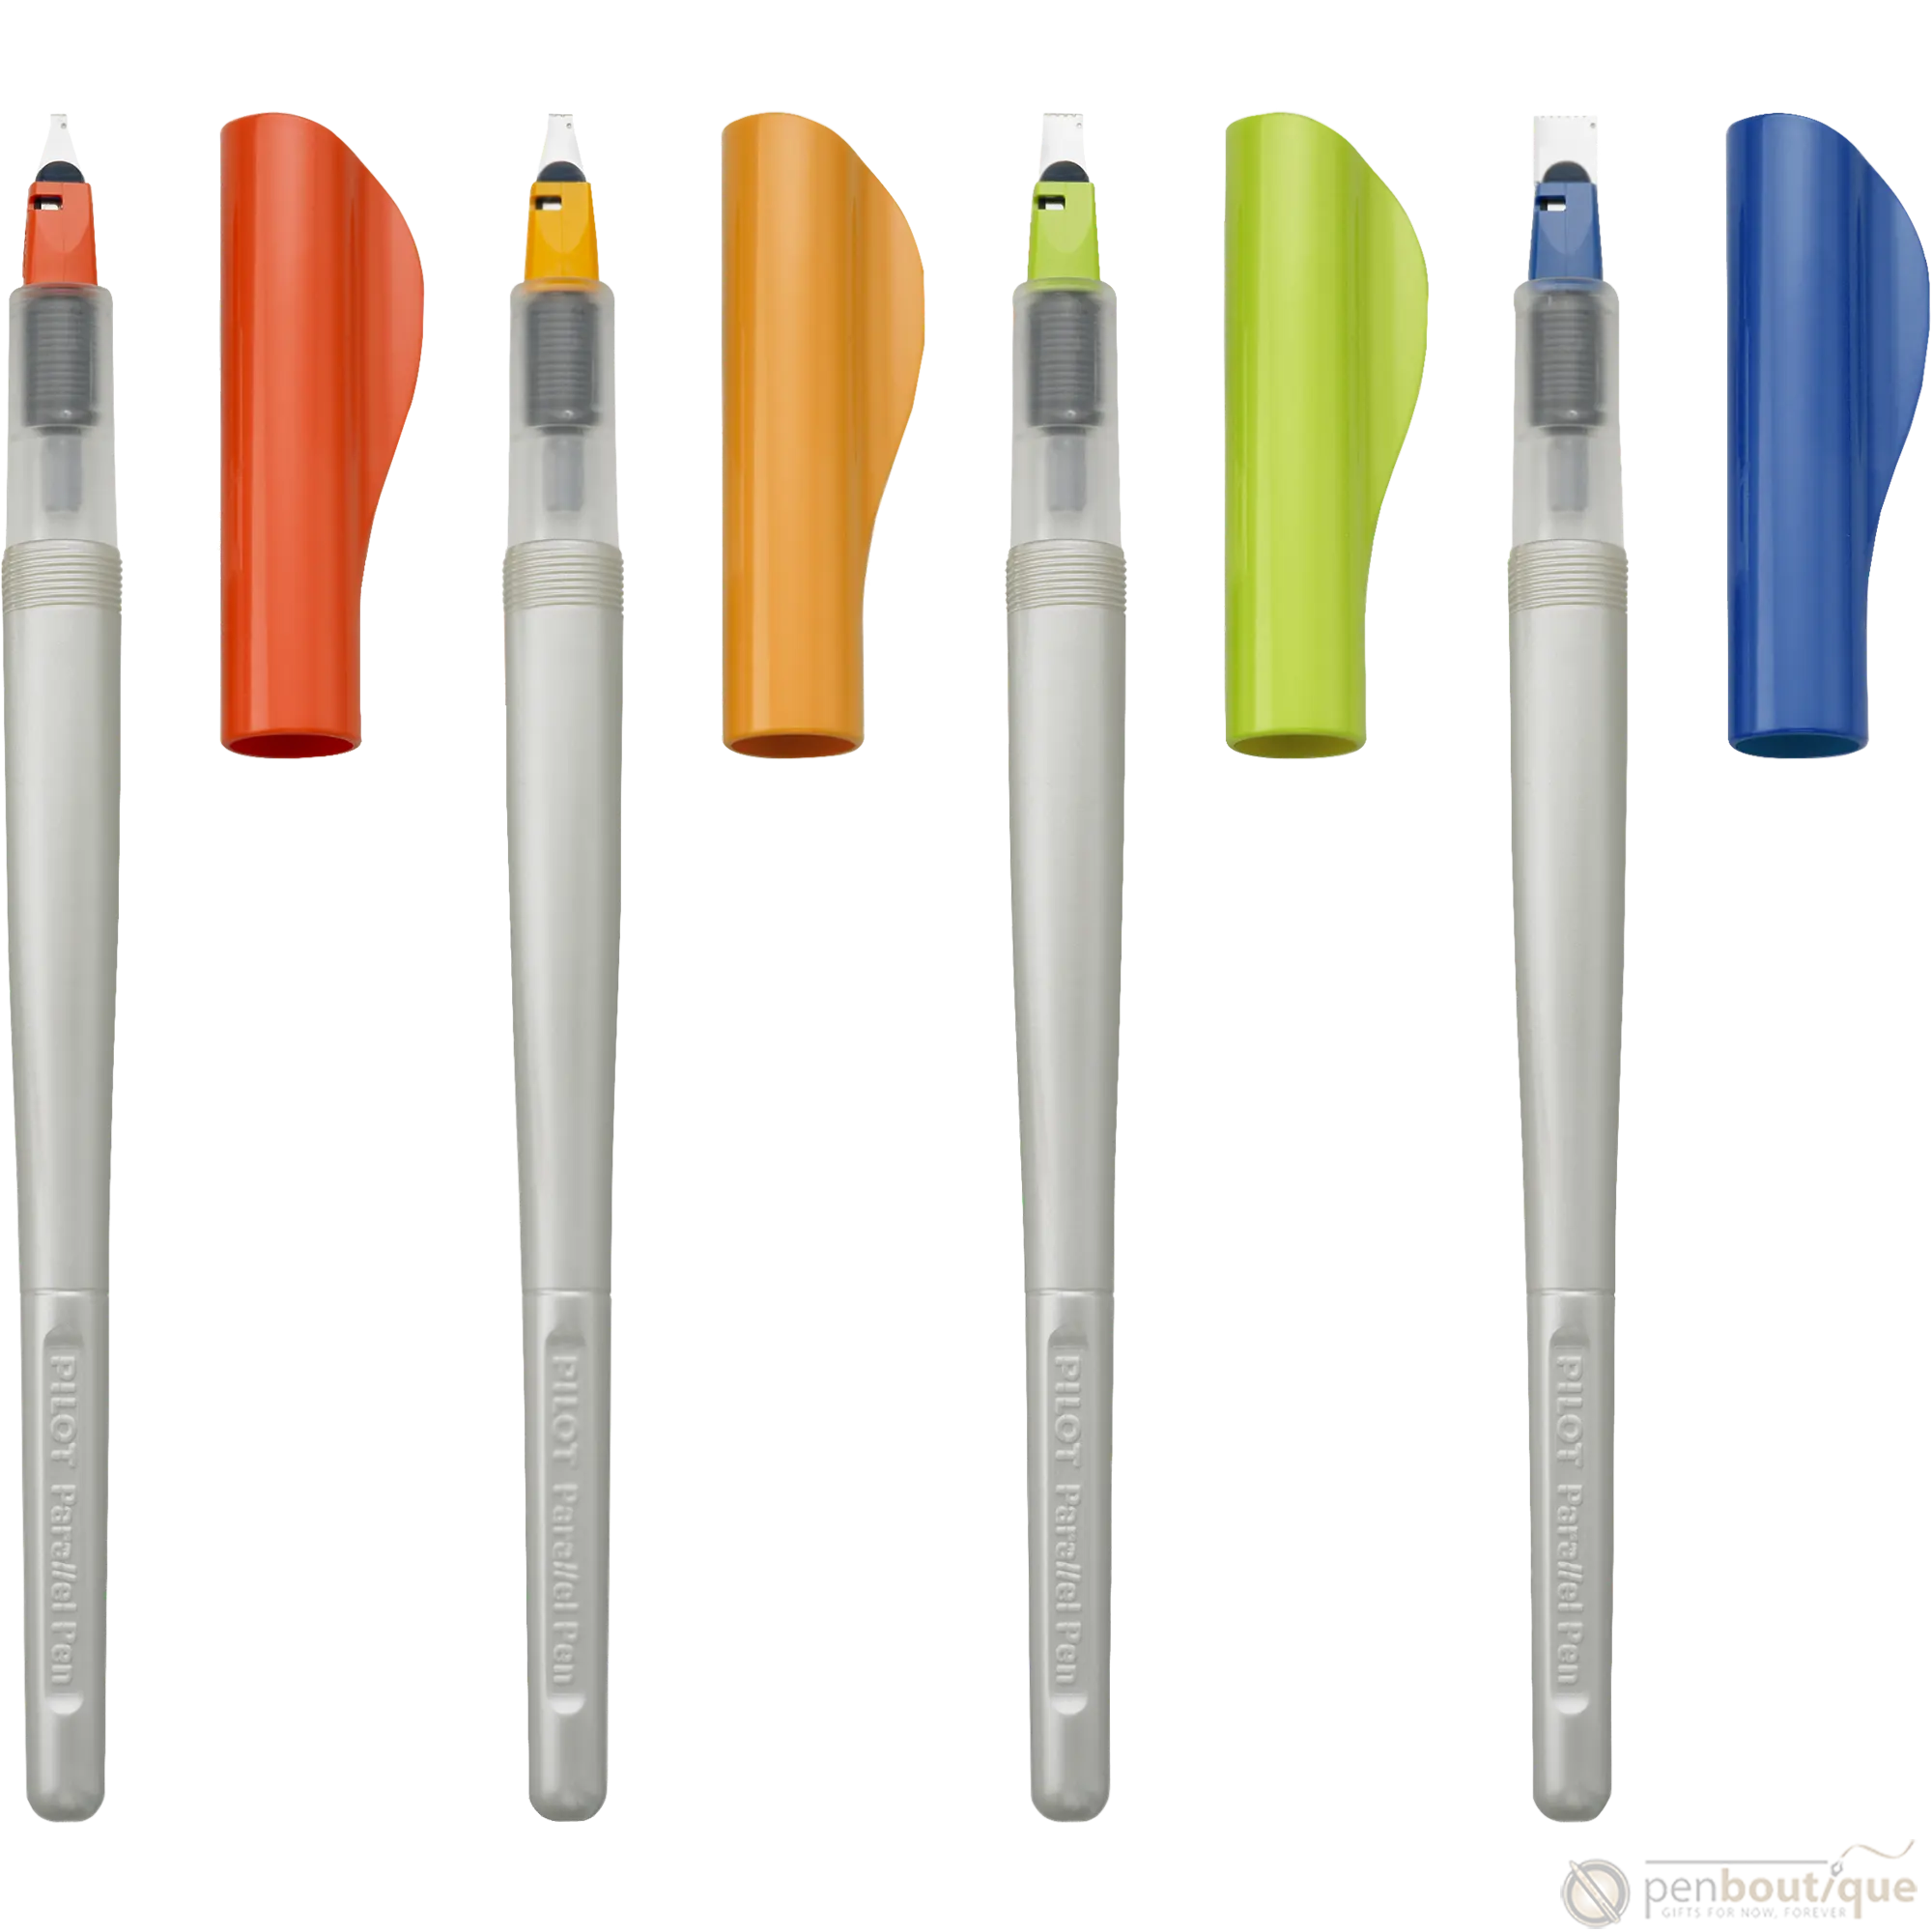 Pilot Parallel Fountain Pen - 2.4mm-Pen Boutique Ltd